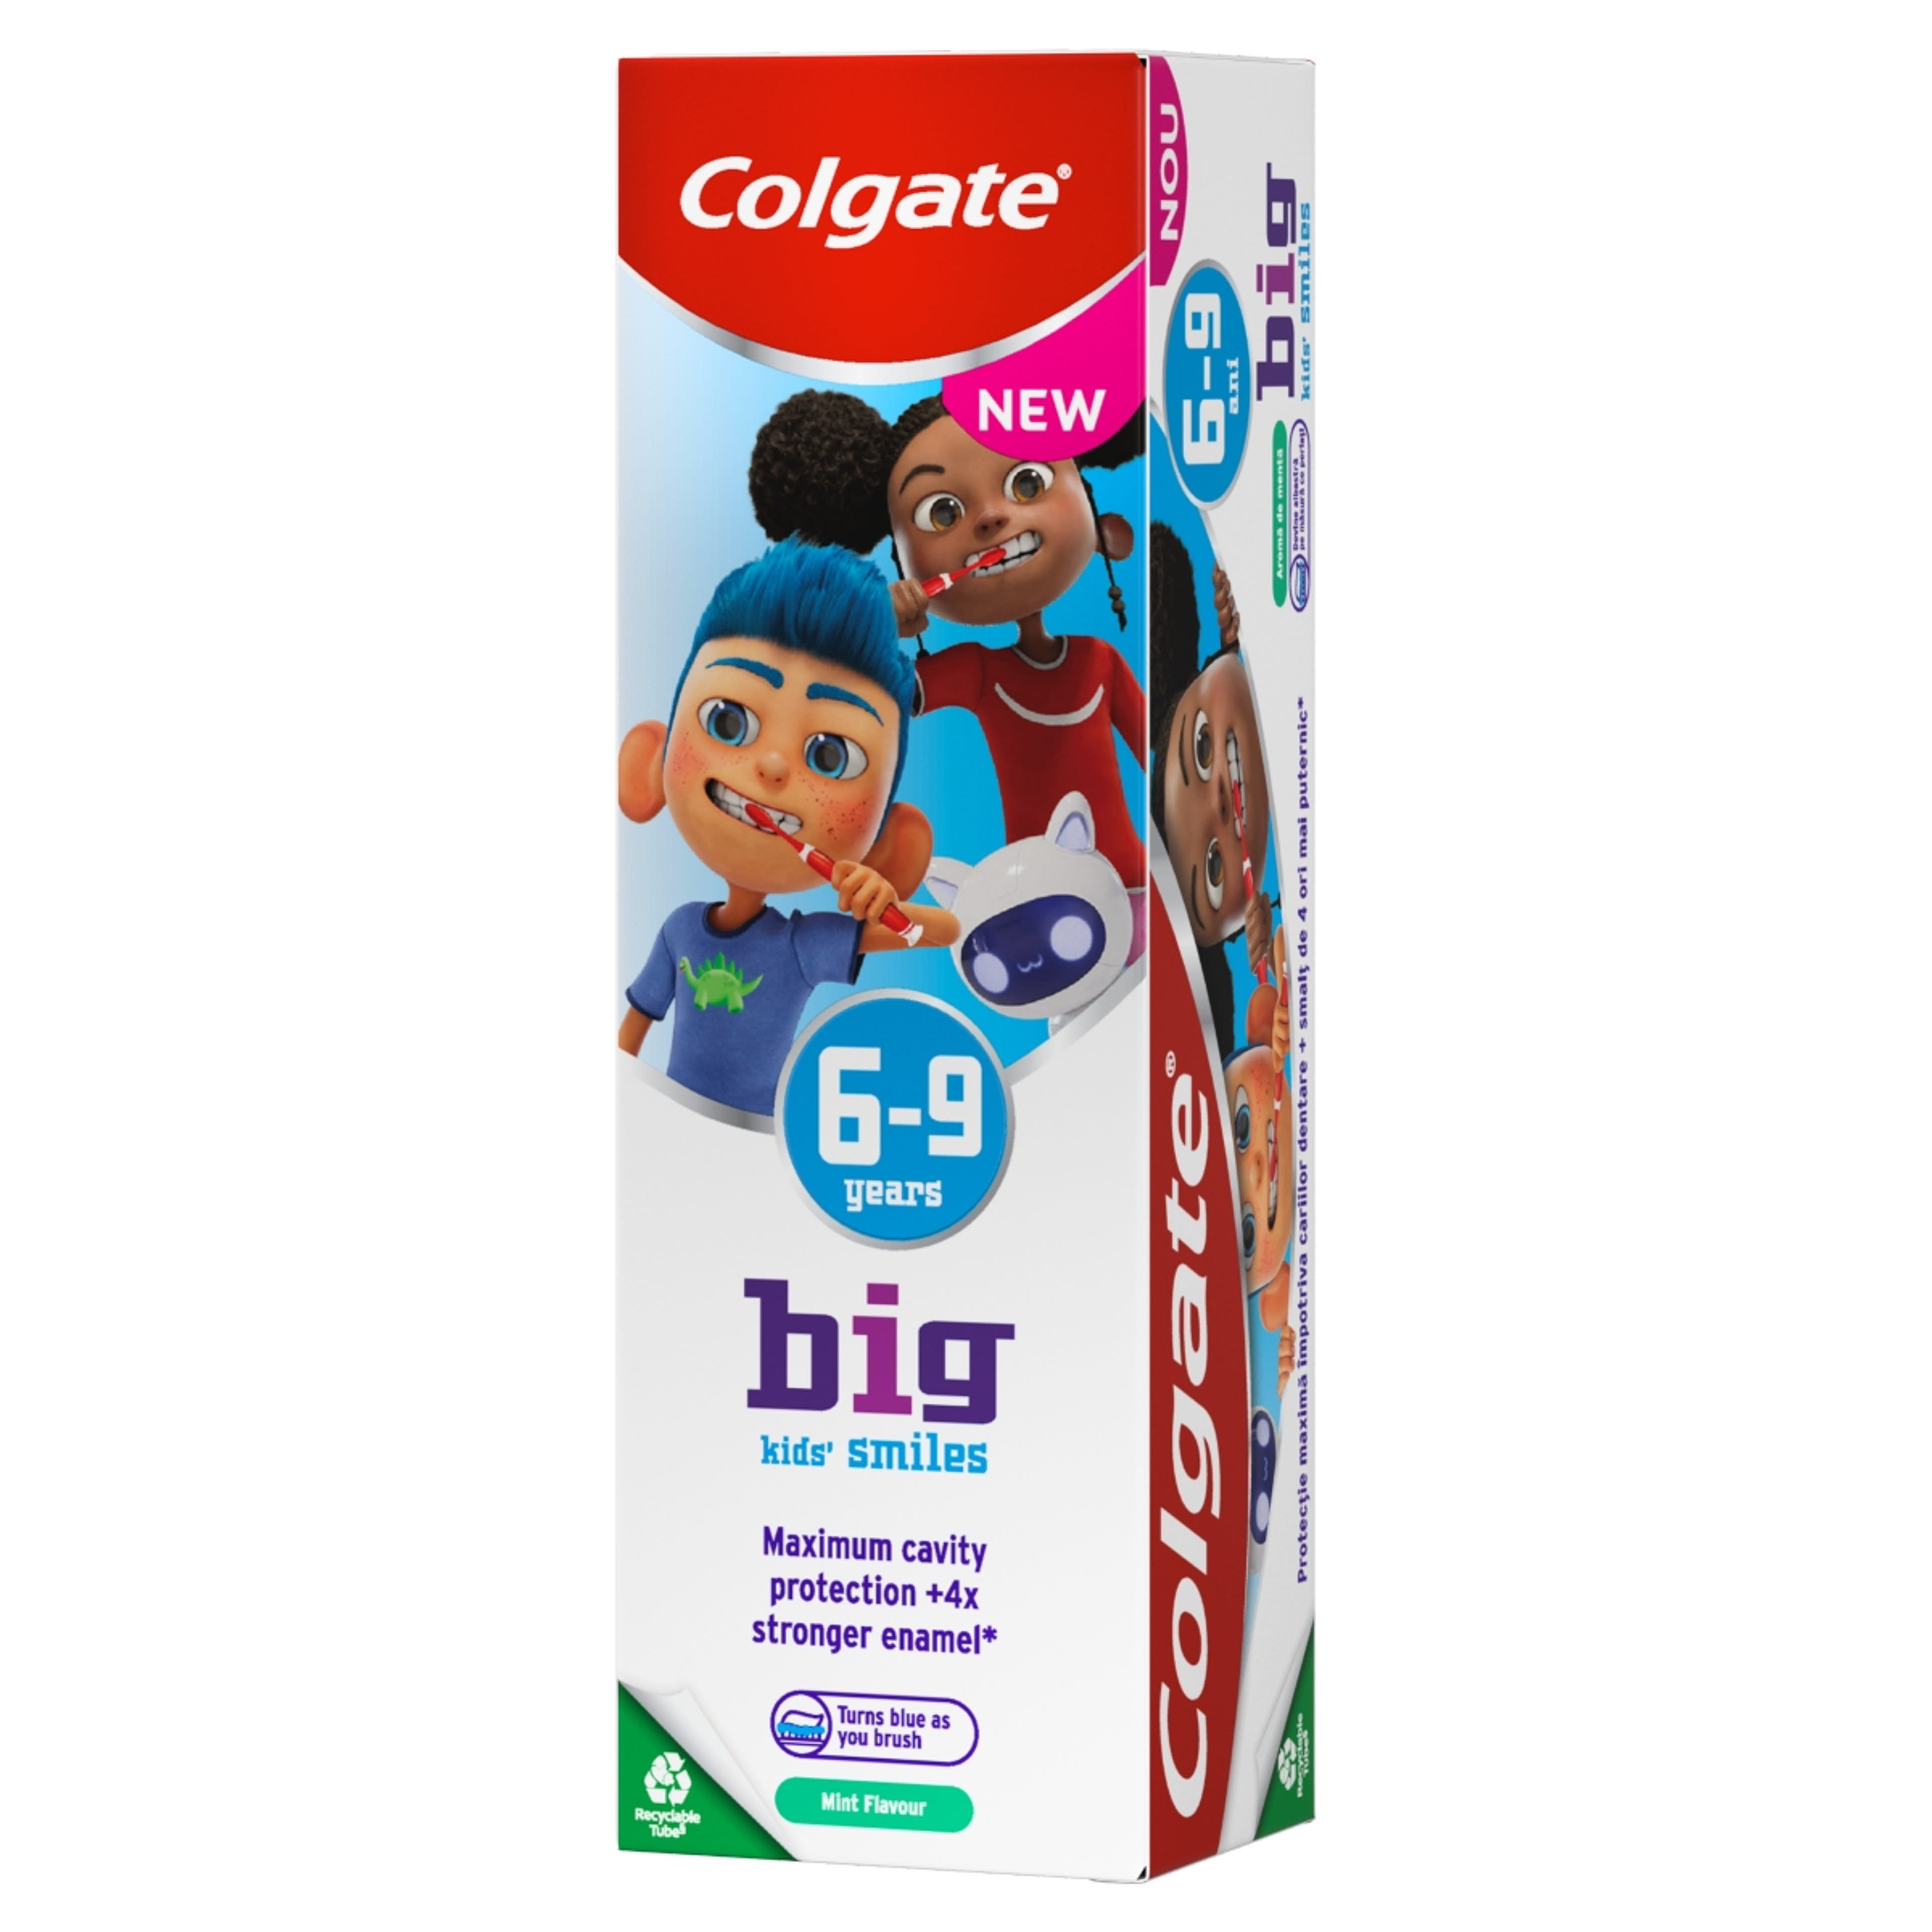 Colgate Kids Smiles fogkrém 6-9 éves gyerekek részére - 50 ml